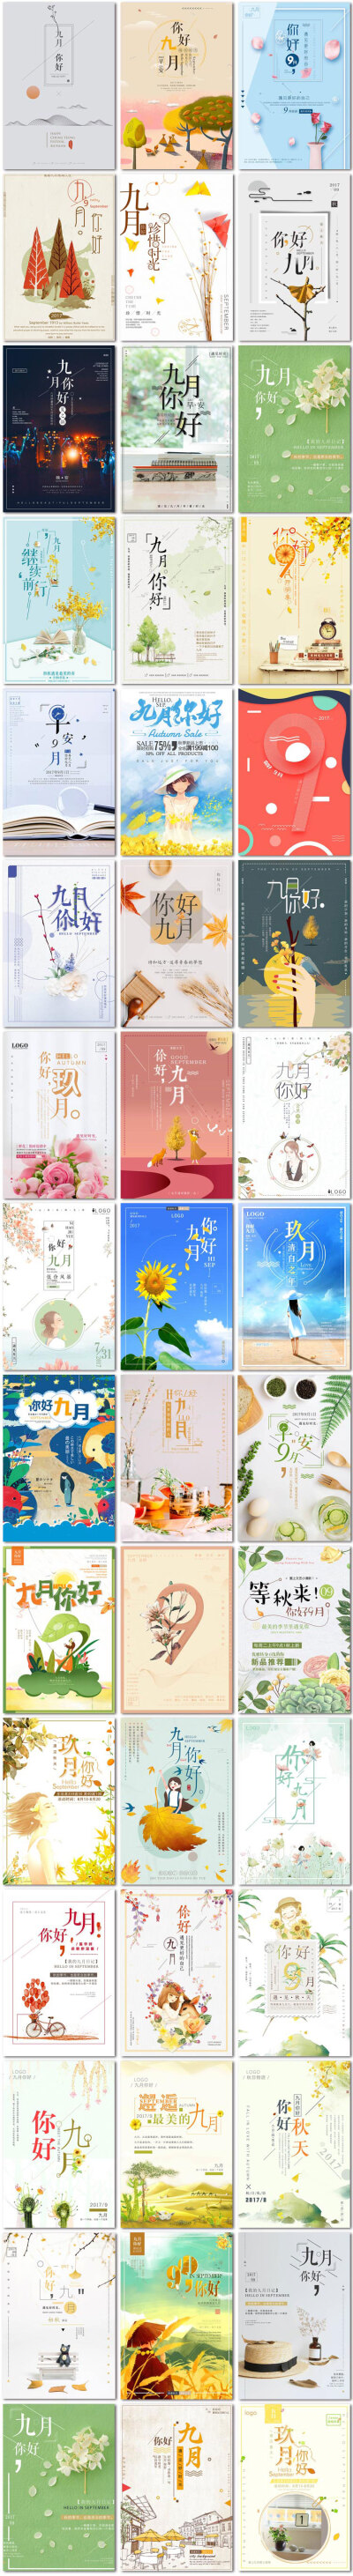 九月你好9月梦想青春励志微信日系小清新海报psd模板素材设计